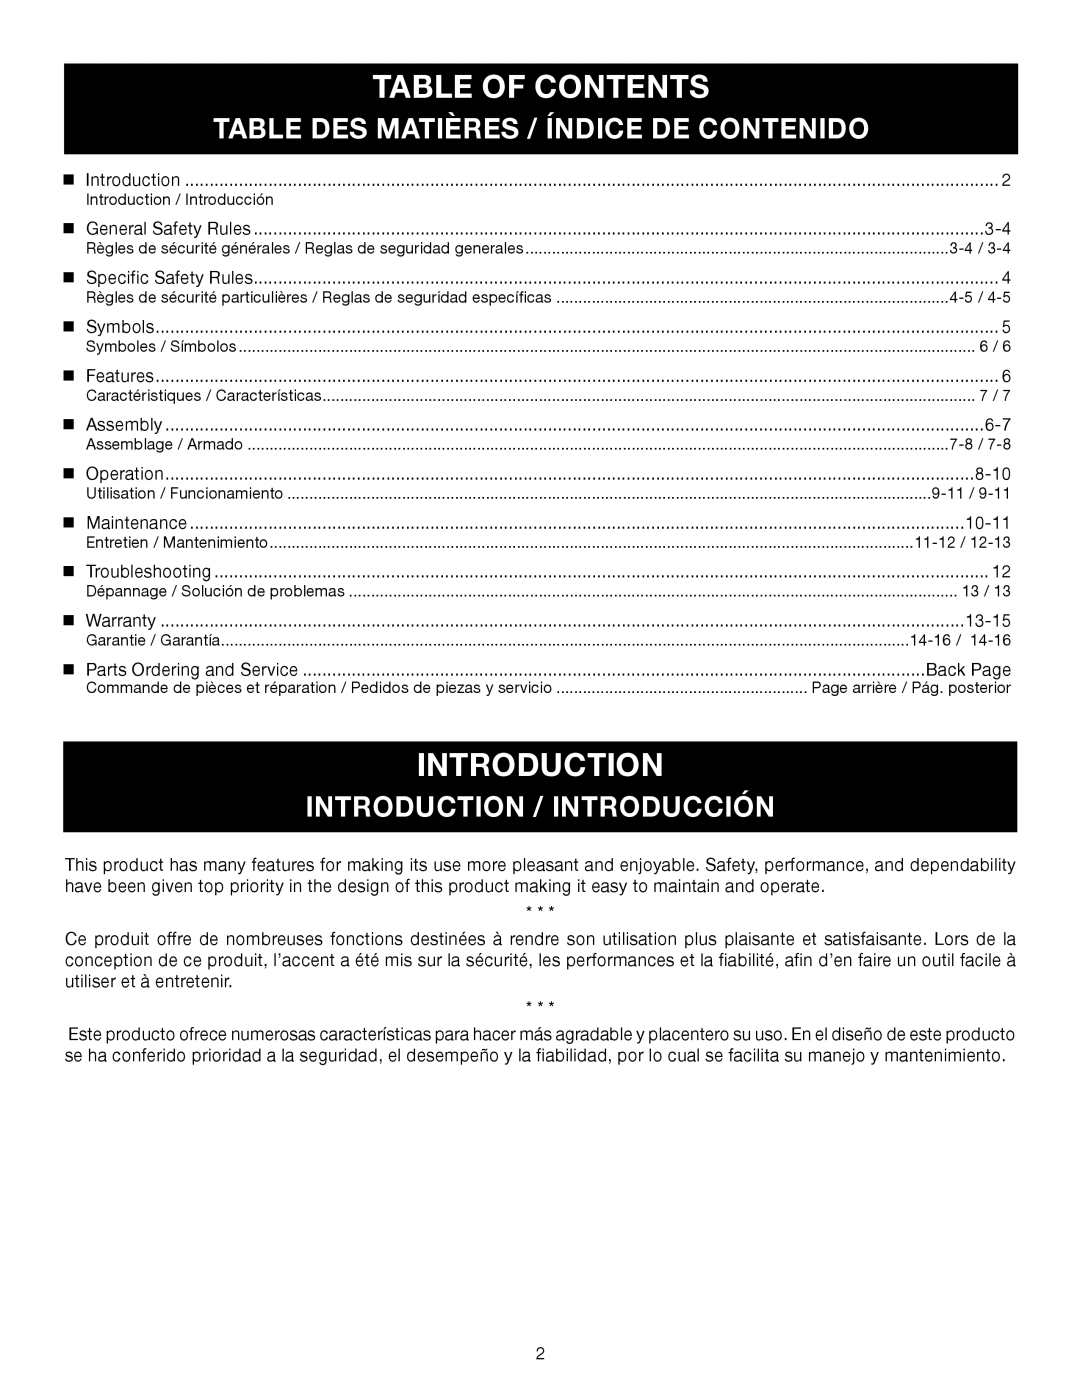 Ryobi RY09605 Table Of Contents, introduction, Table Des Matières / Índice De Contenido, Introduction / Introducción 